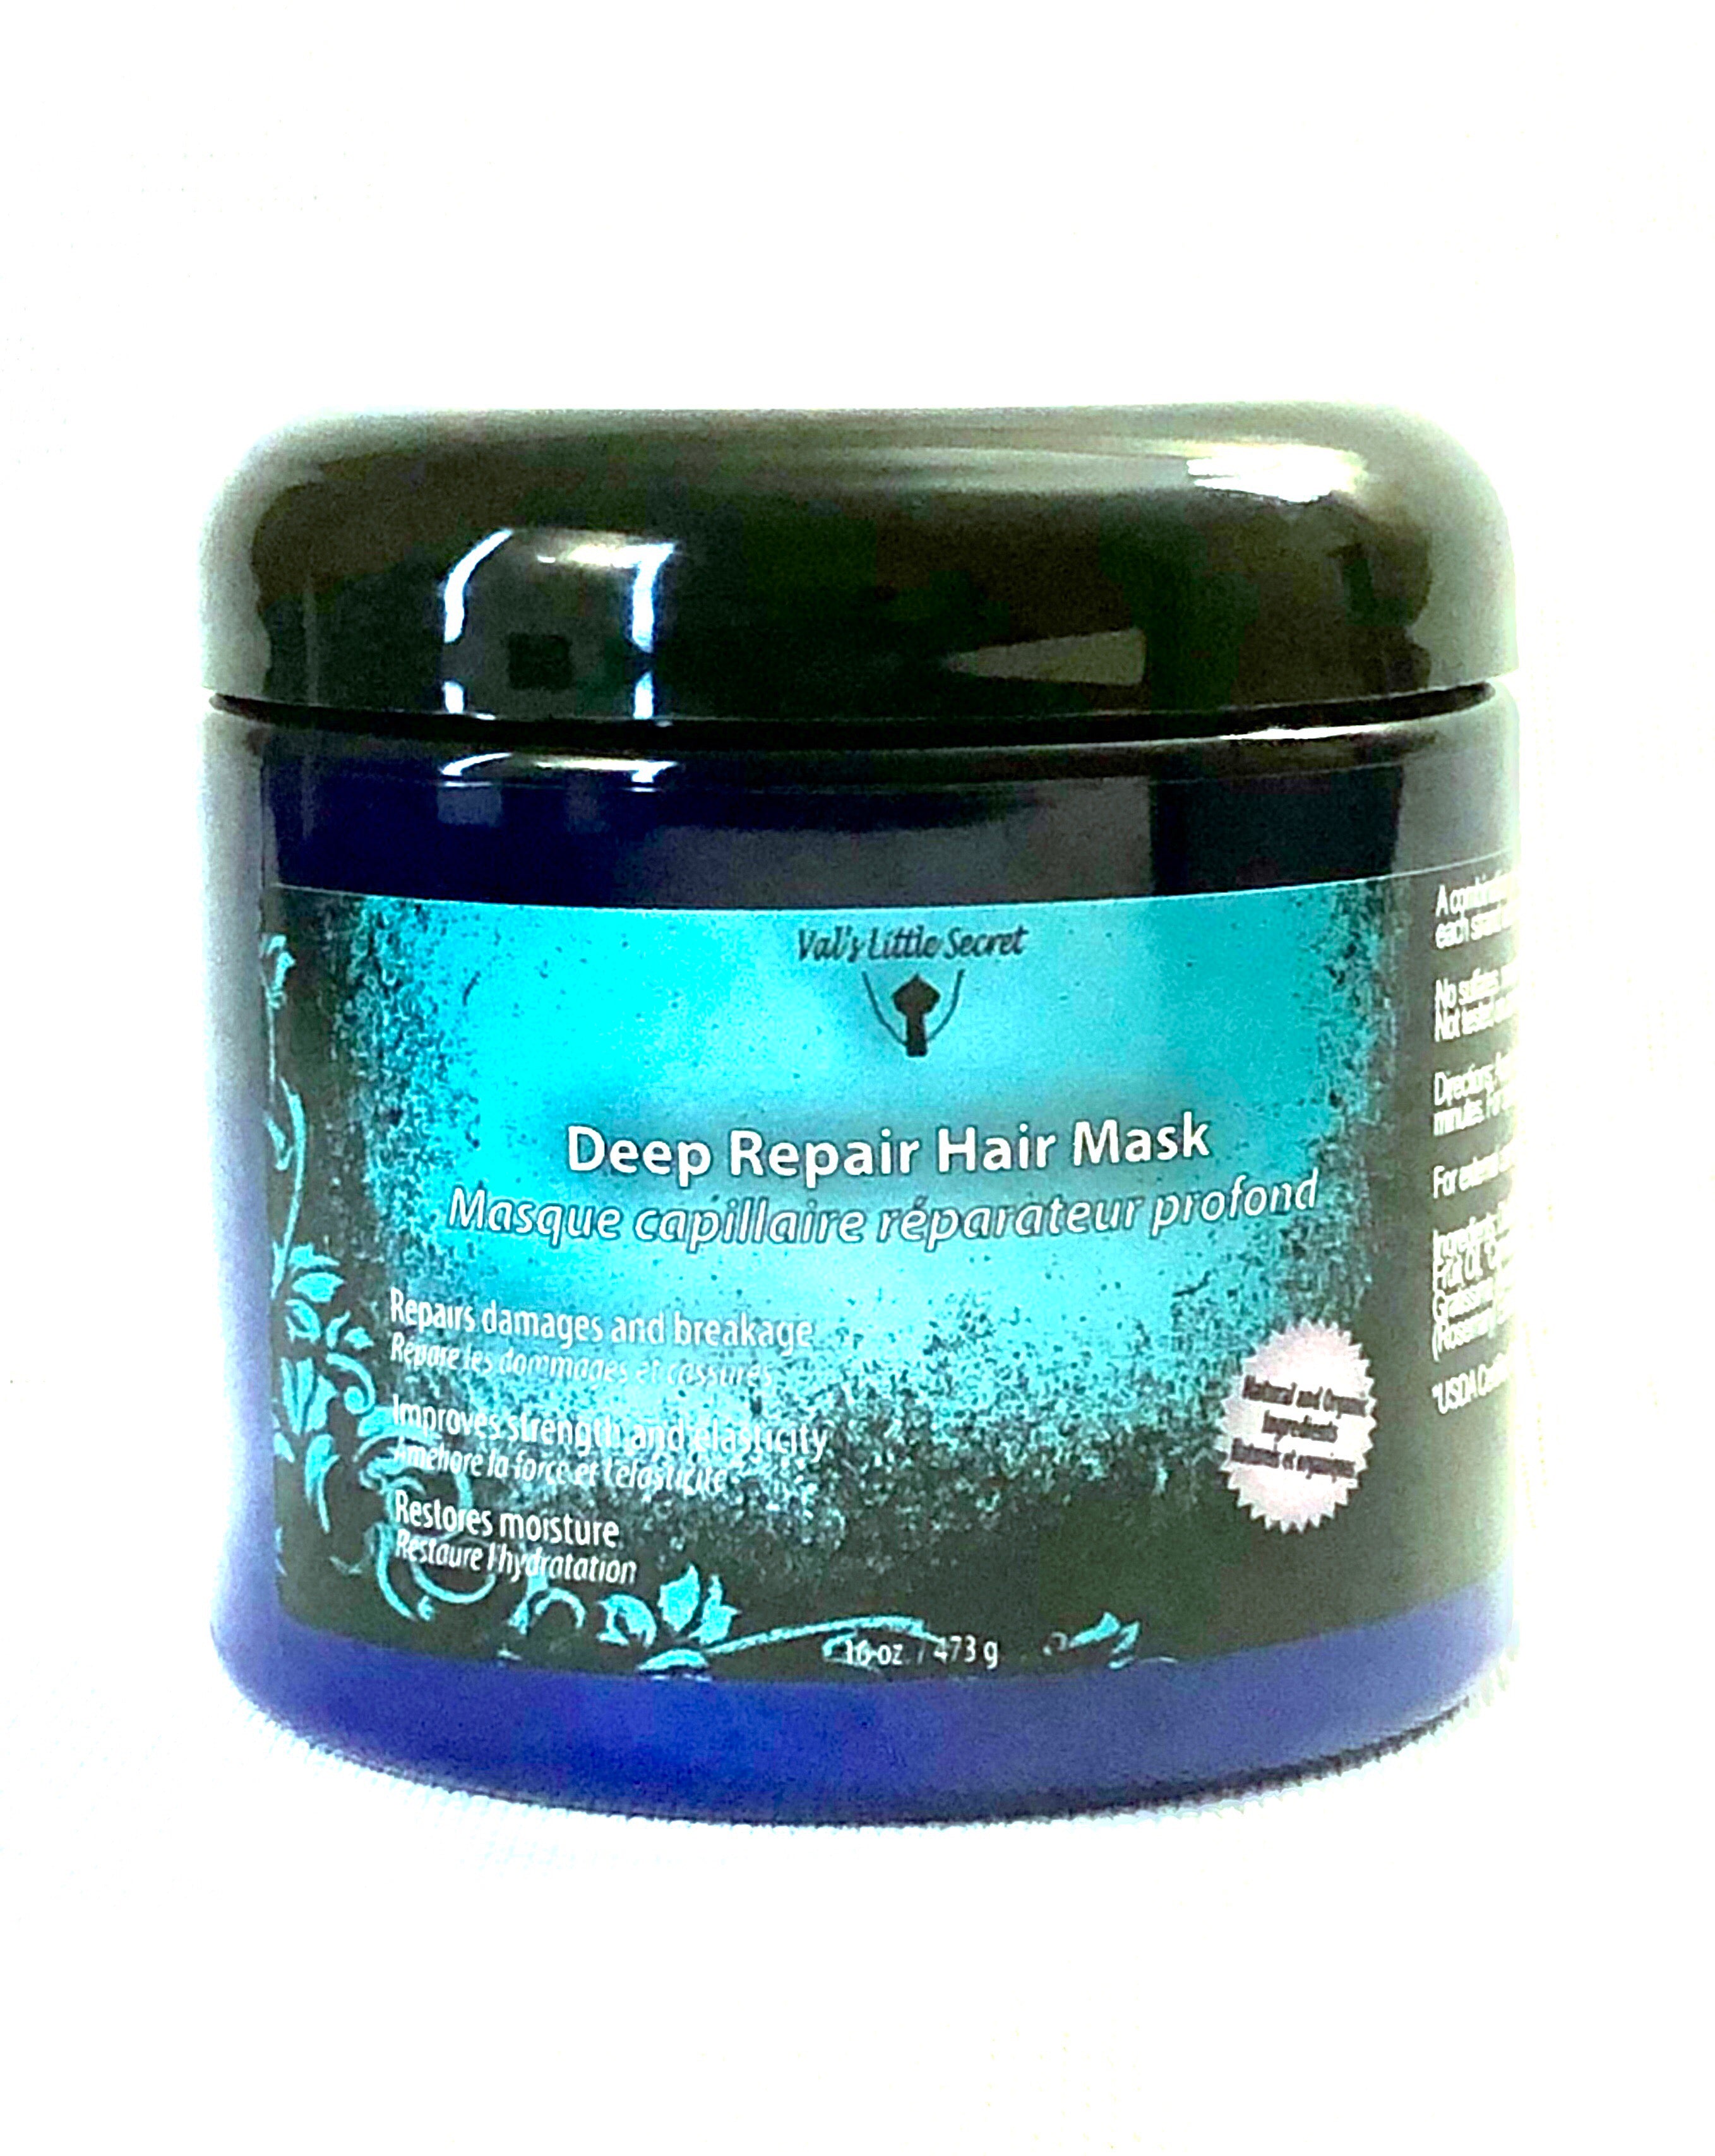 Deep repair hair mask – nevcare